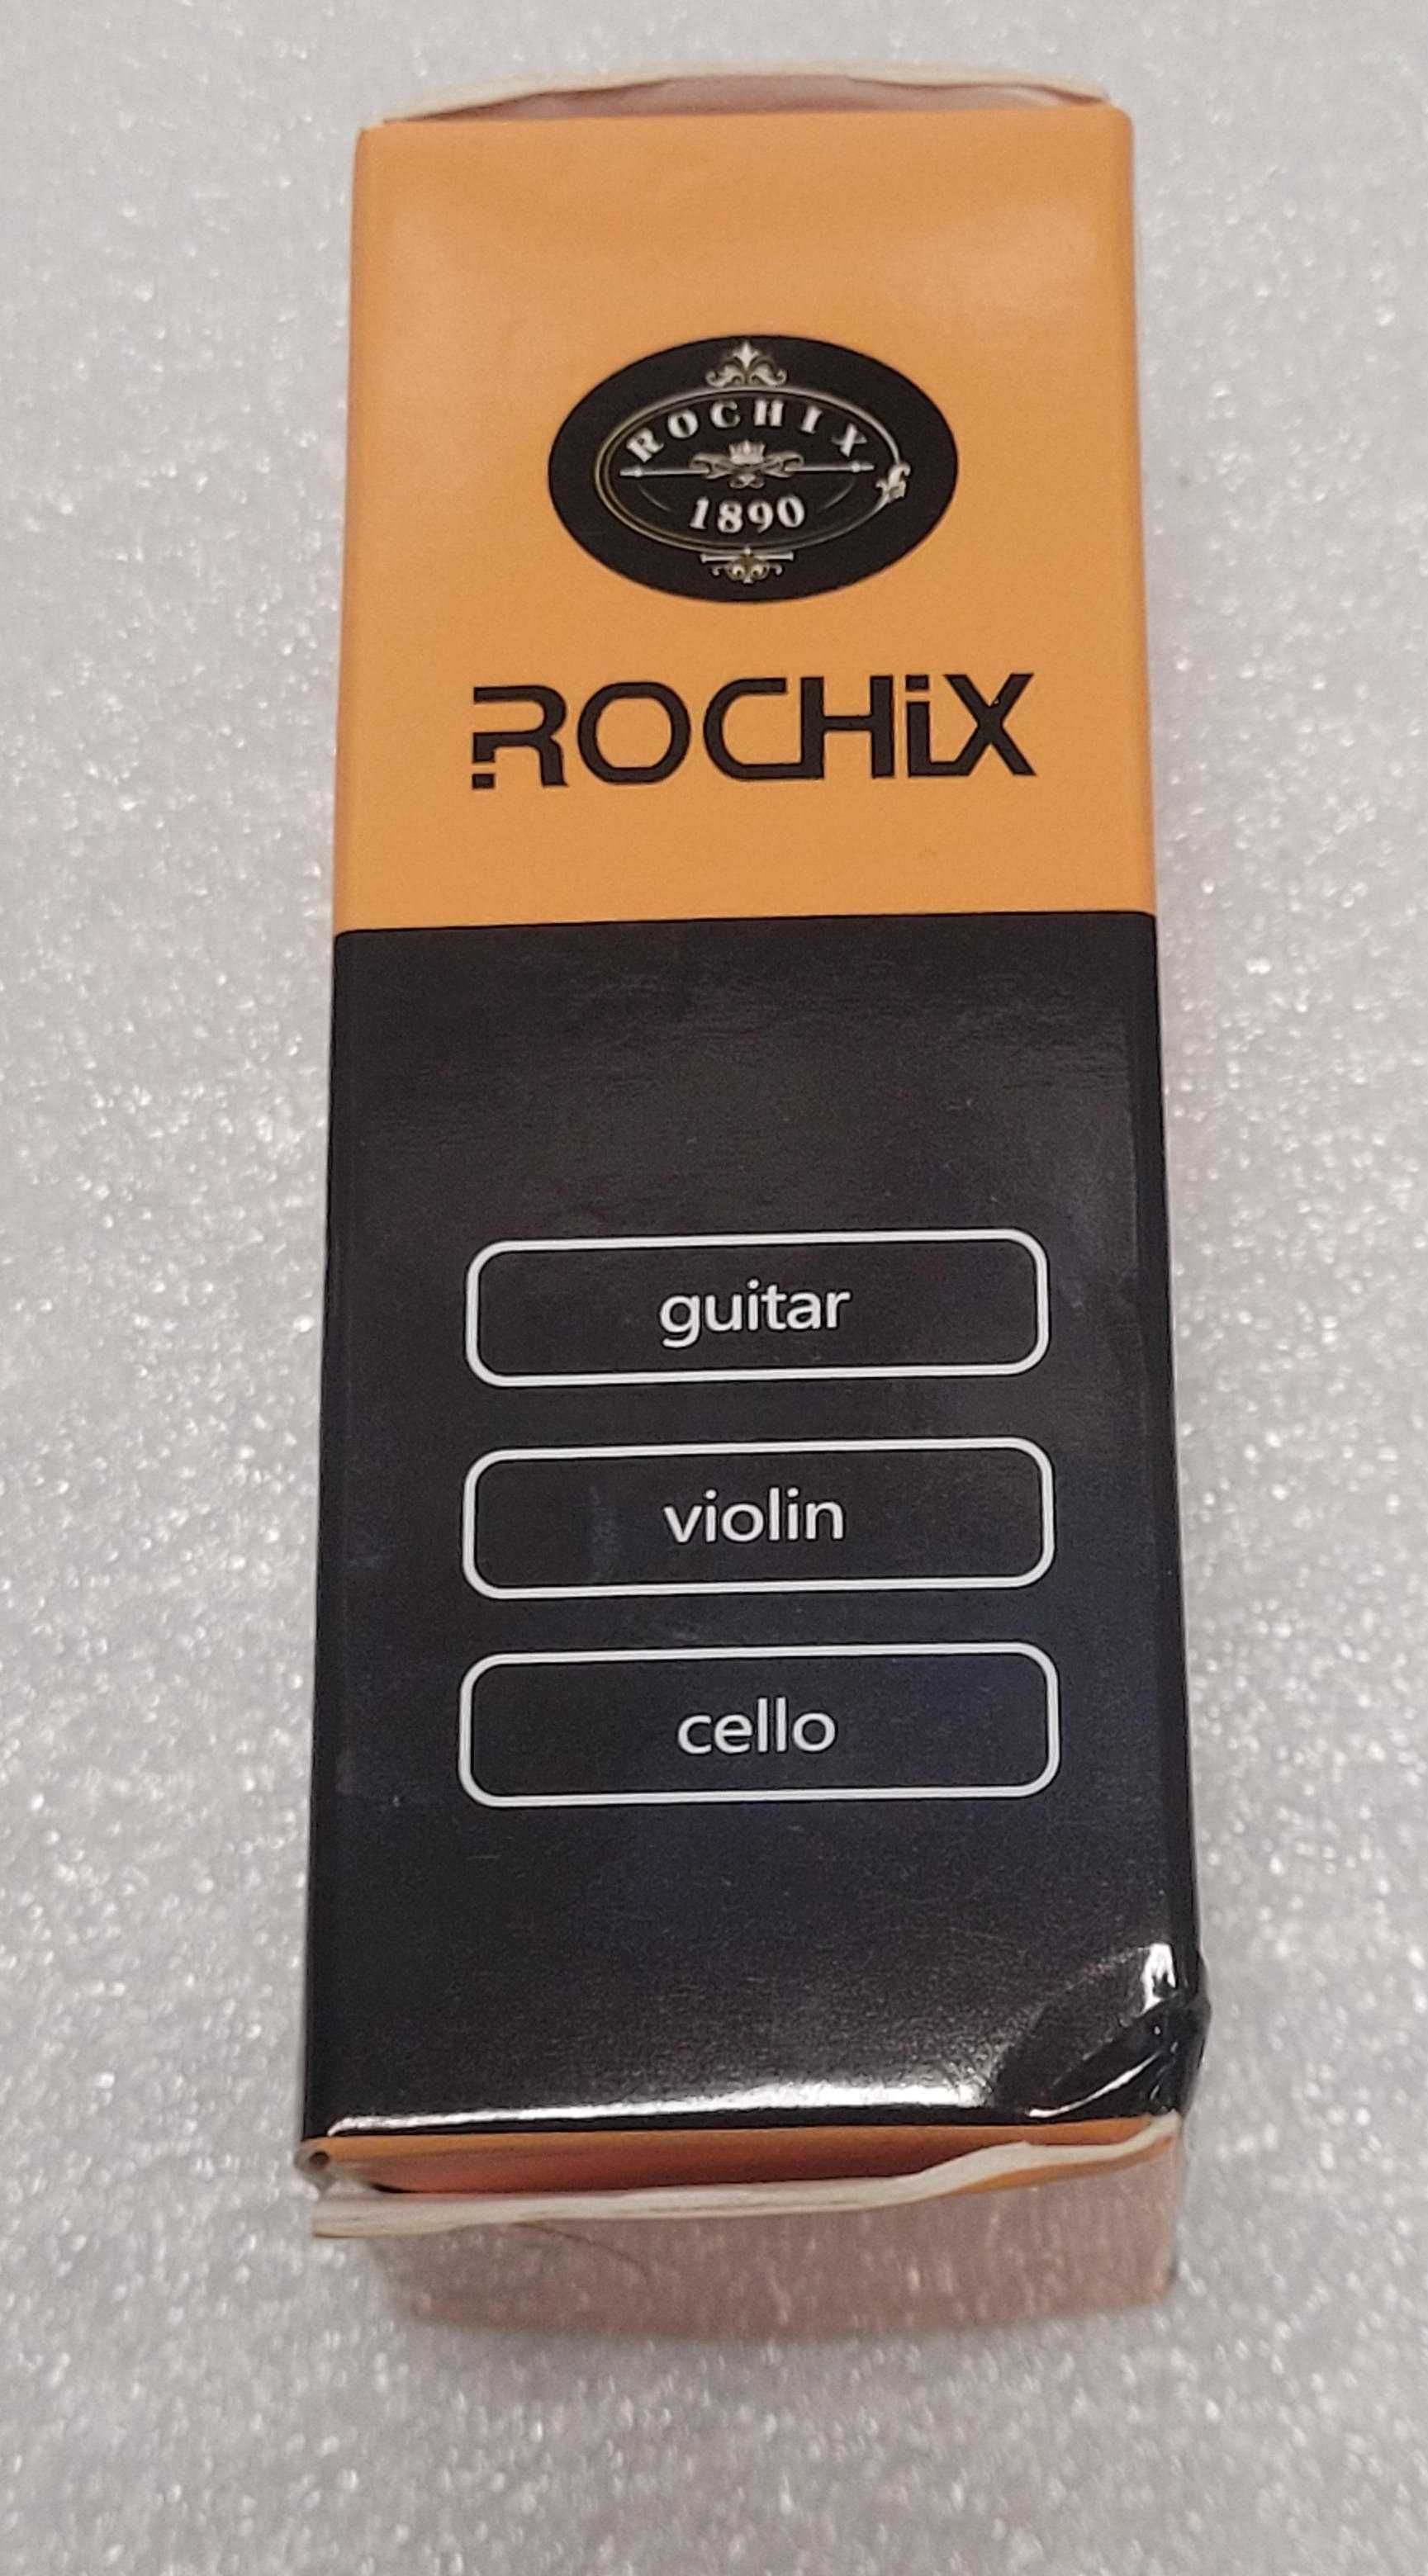 Rochix Olej do Strun Premium do gitary i innych instrumentów